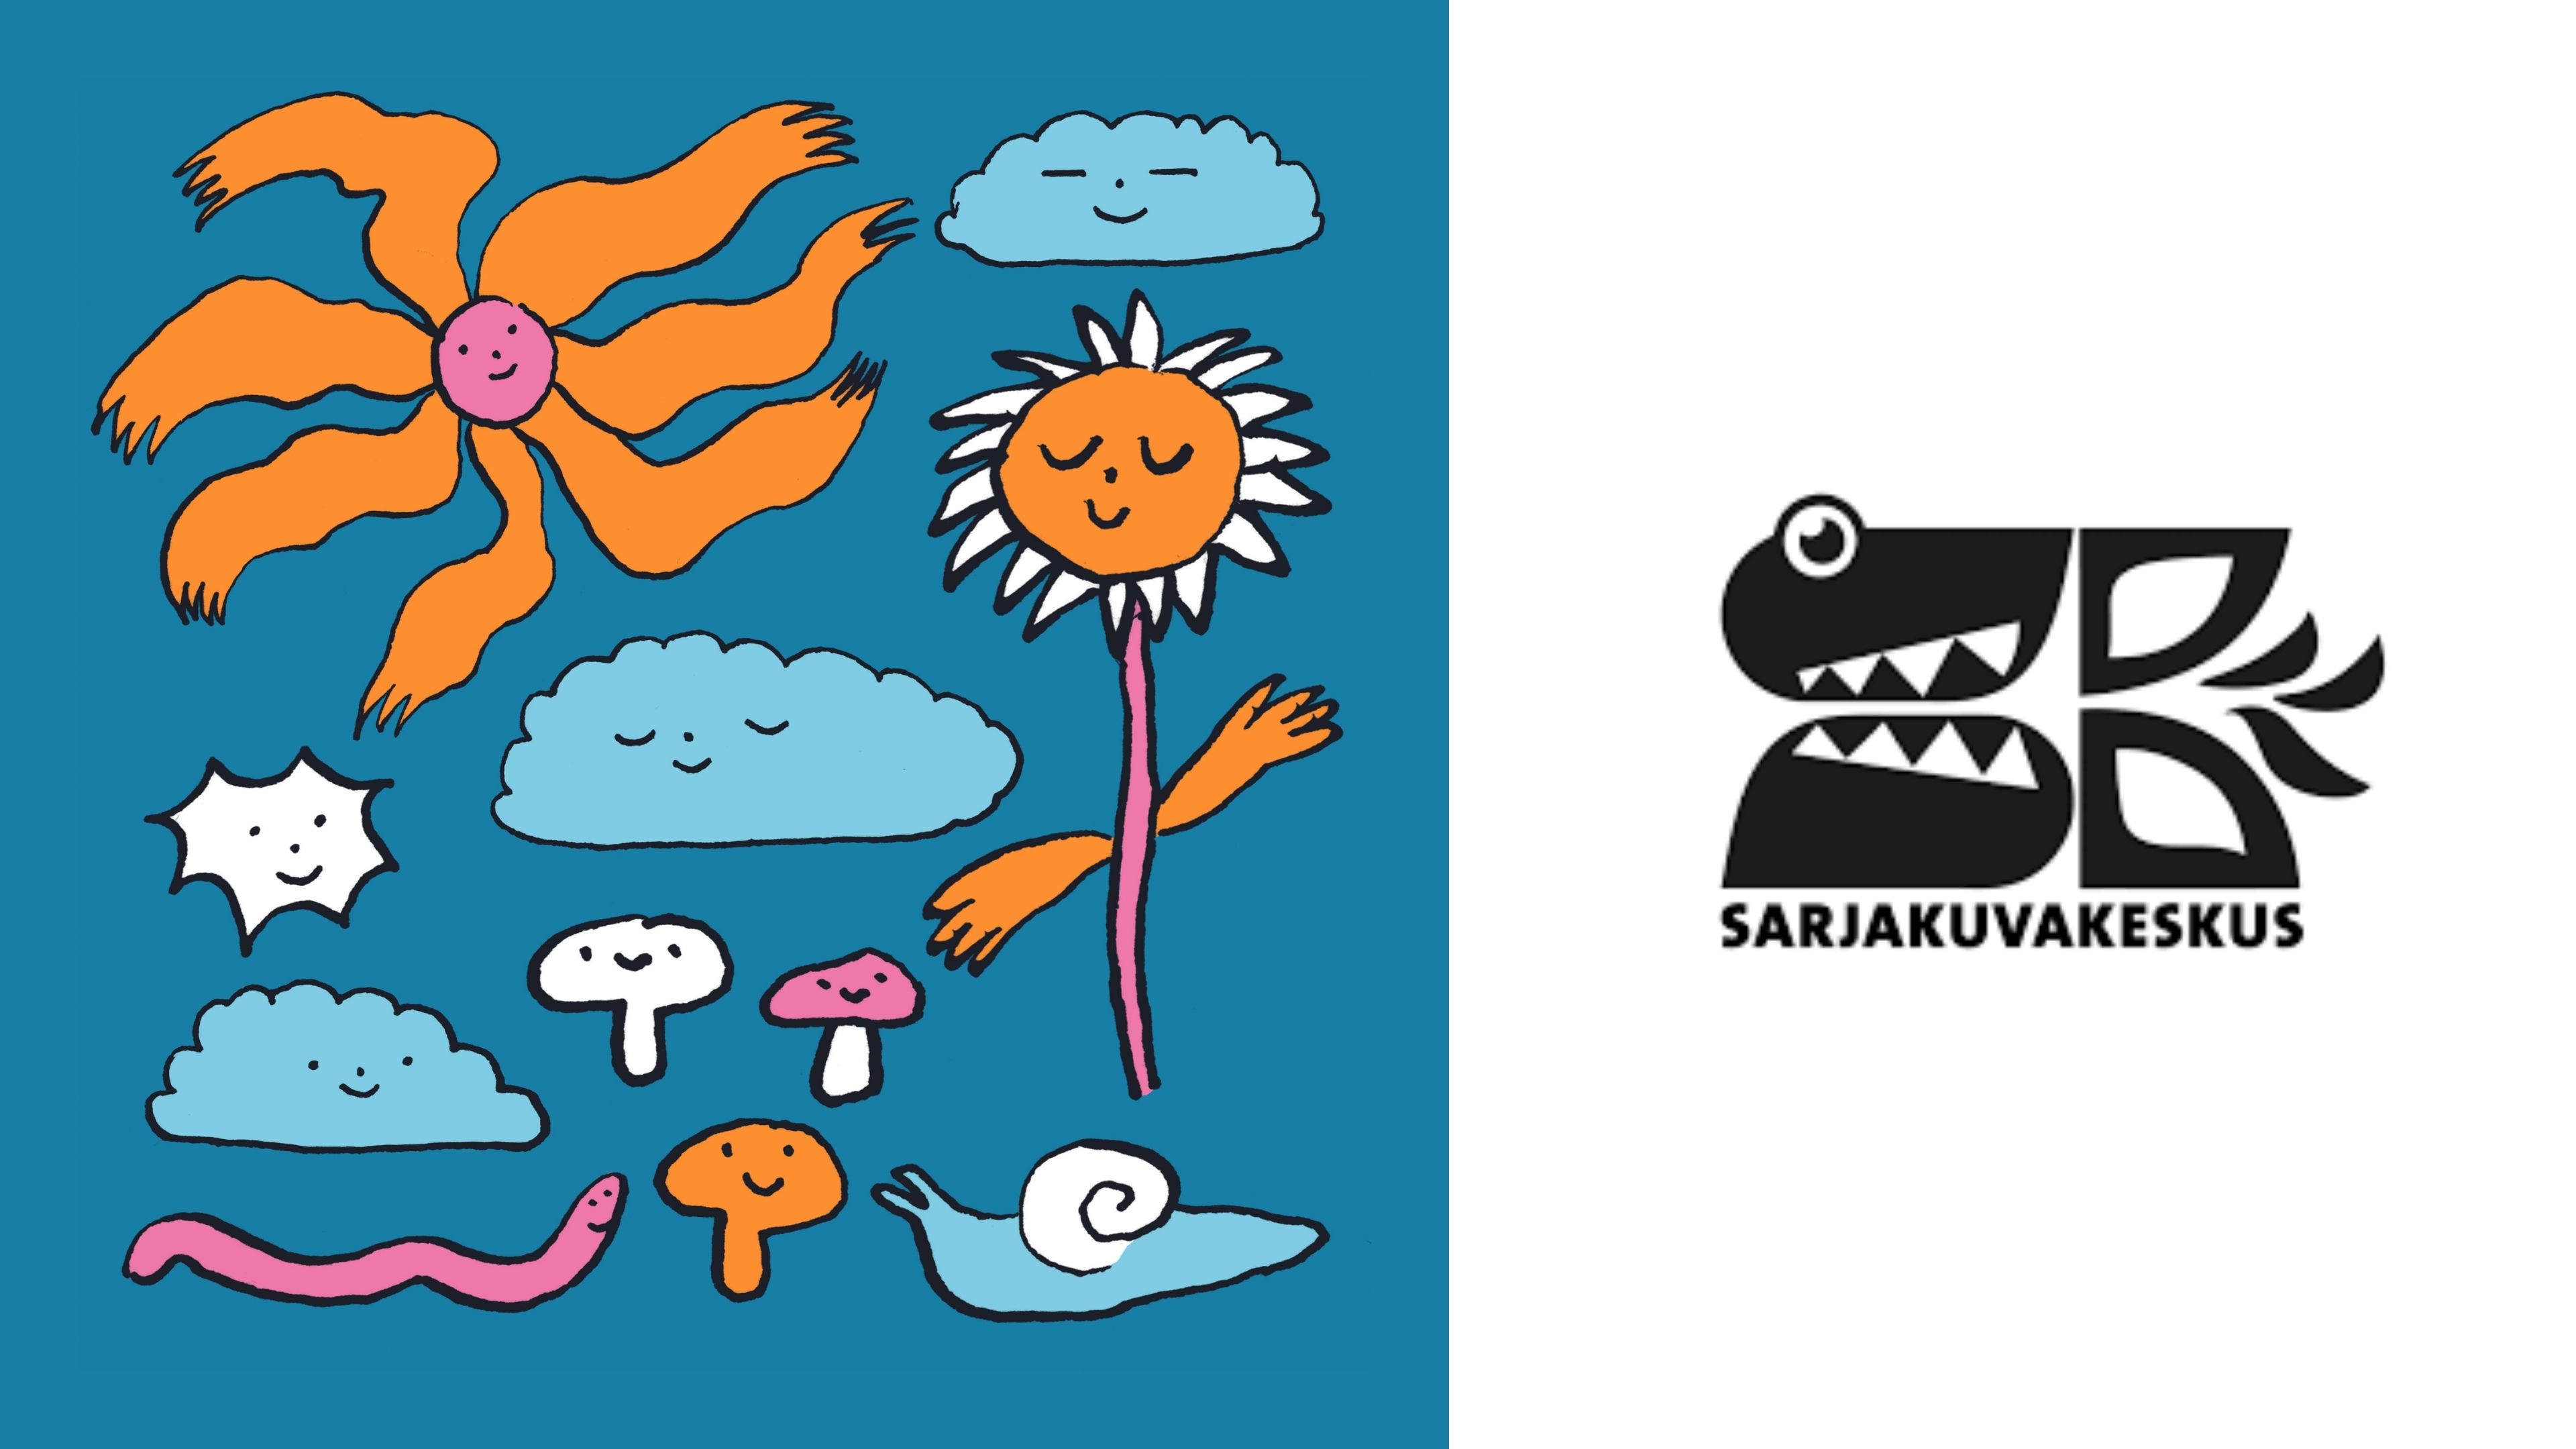 Piirrettyjä kukkia, pilviä ja sieniä sinisellä taustalla, sekä Sarjakuvakeskuksen logo.